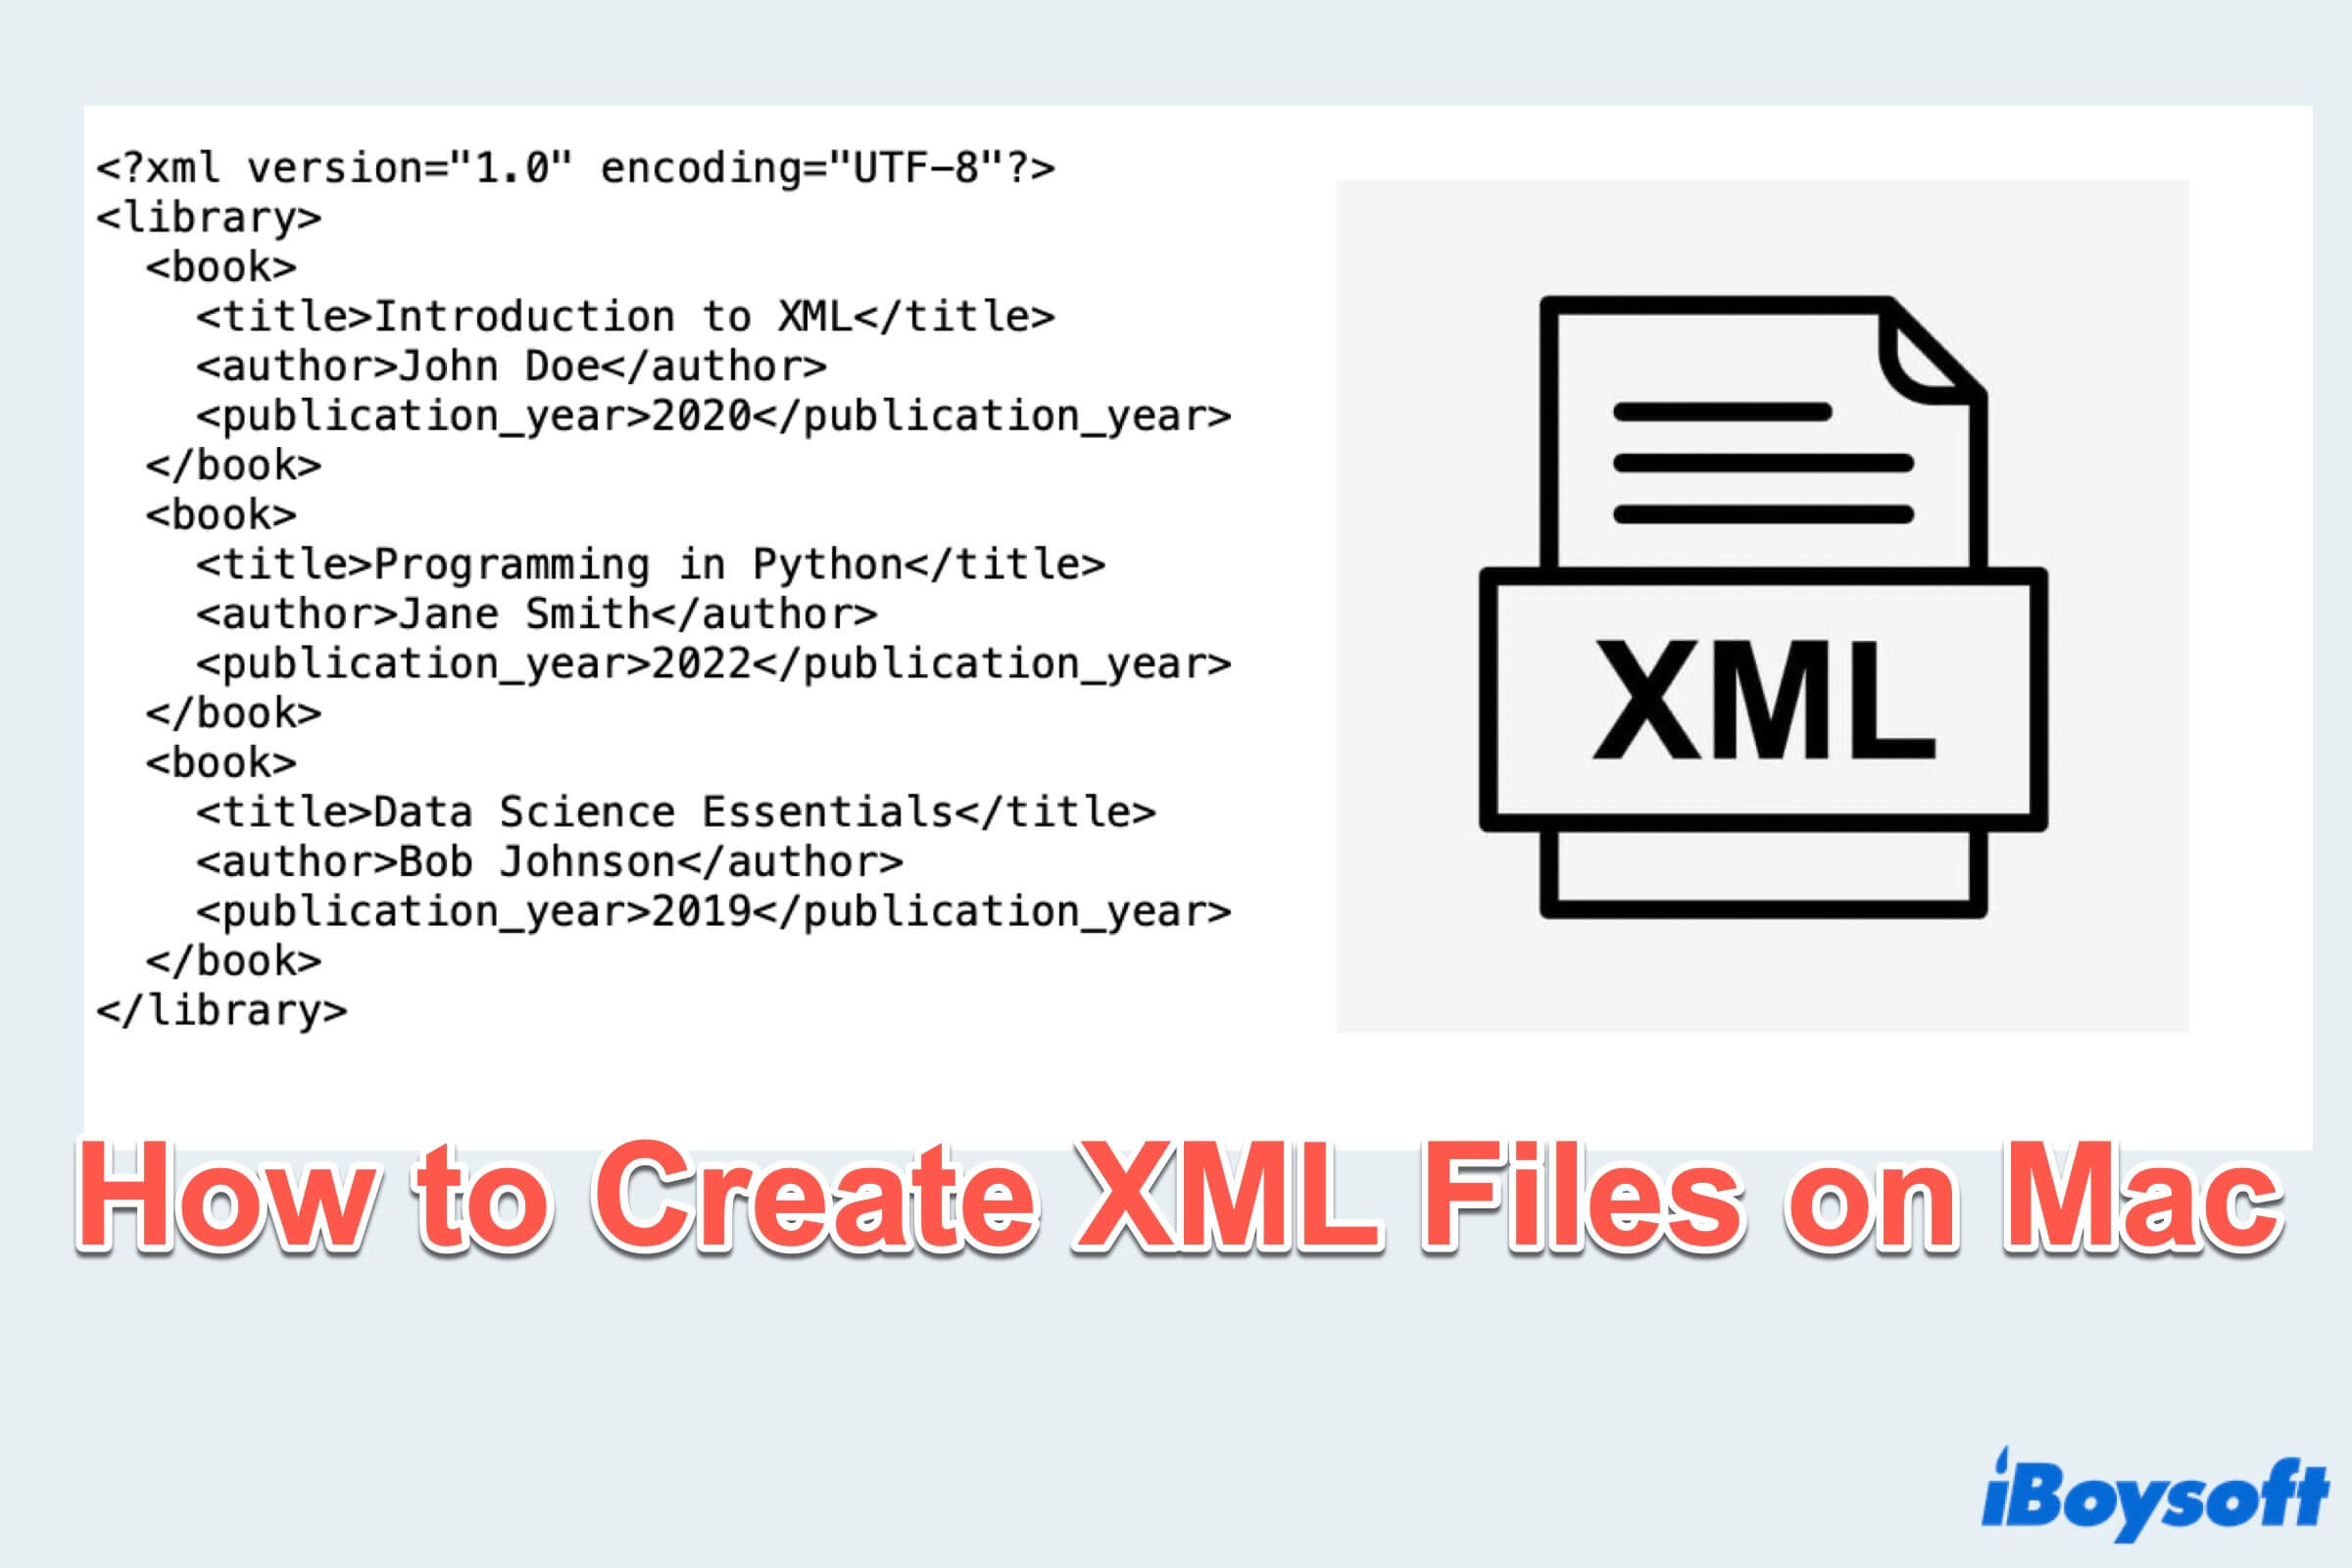 MacでXMLファイルを作成する方法の要約